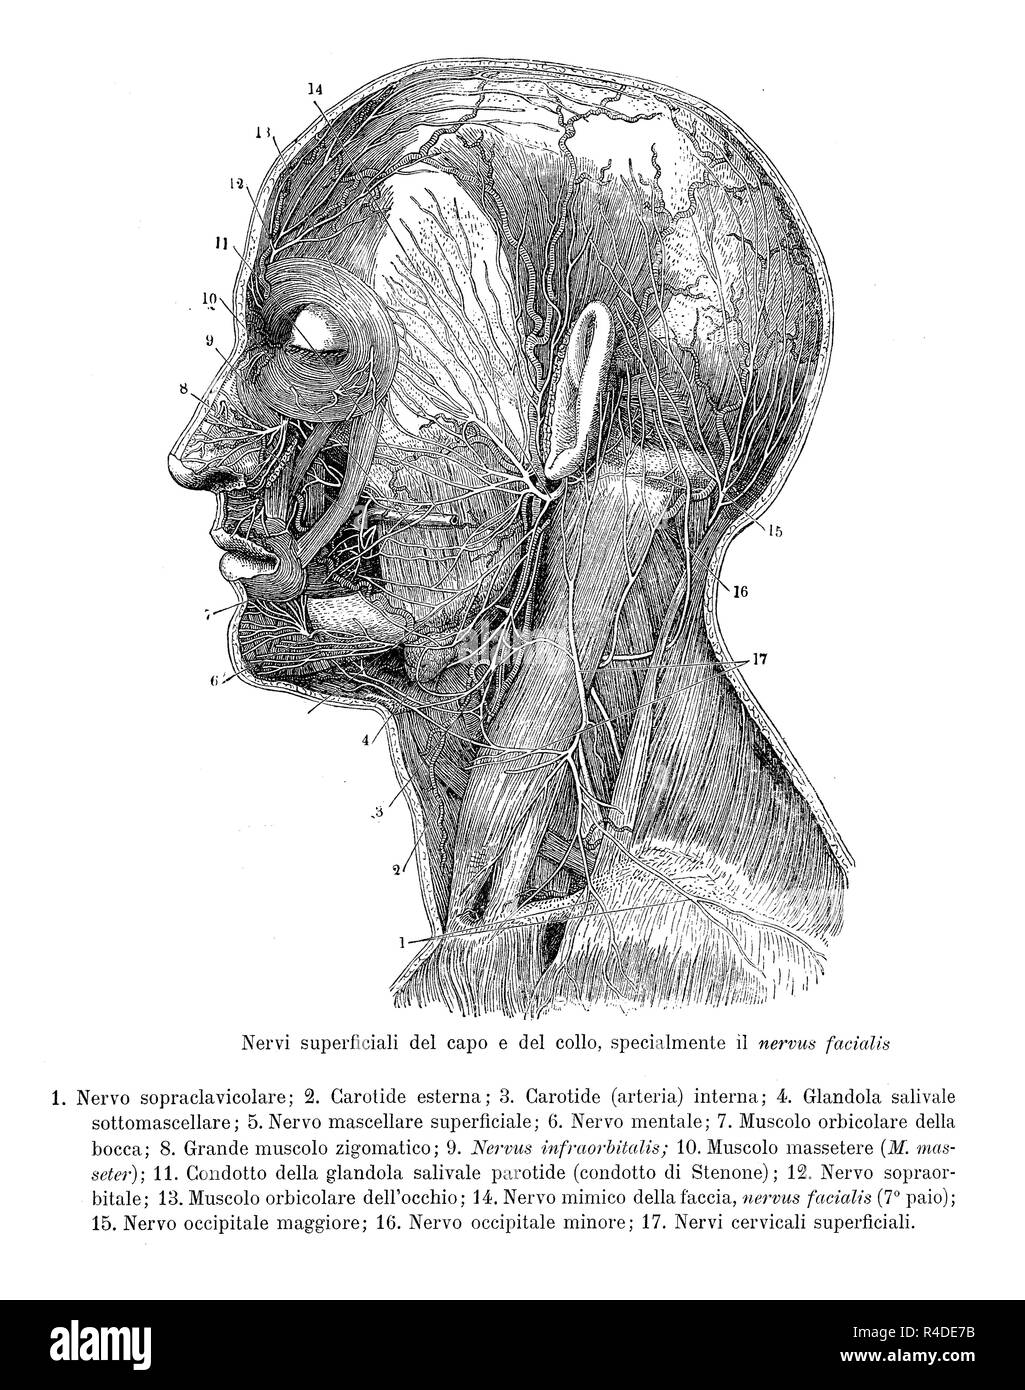 Vintage Abbildung: Anatomie, Querschnitt der menschlichen Kopf und Hals mit Beweis der oberflächlichen Nerven, anatomische Beschreibungen in Italienisch Stockfoto